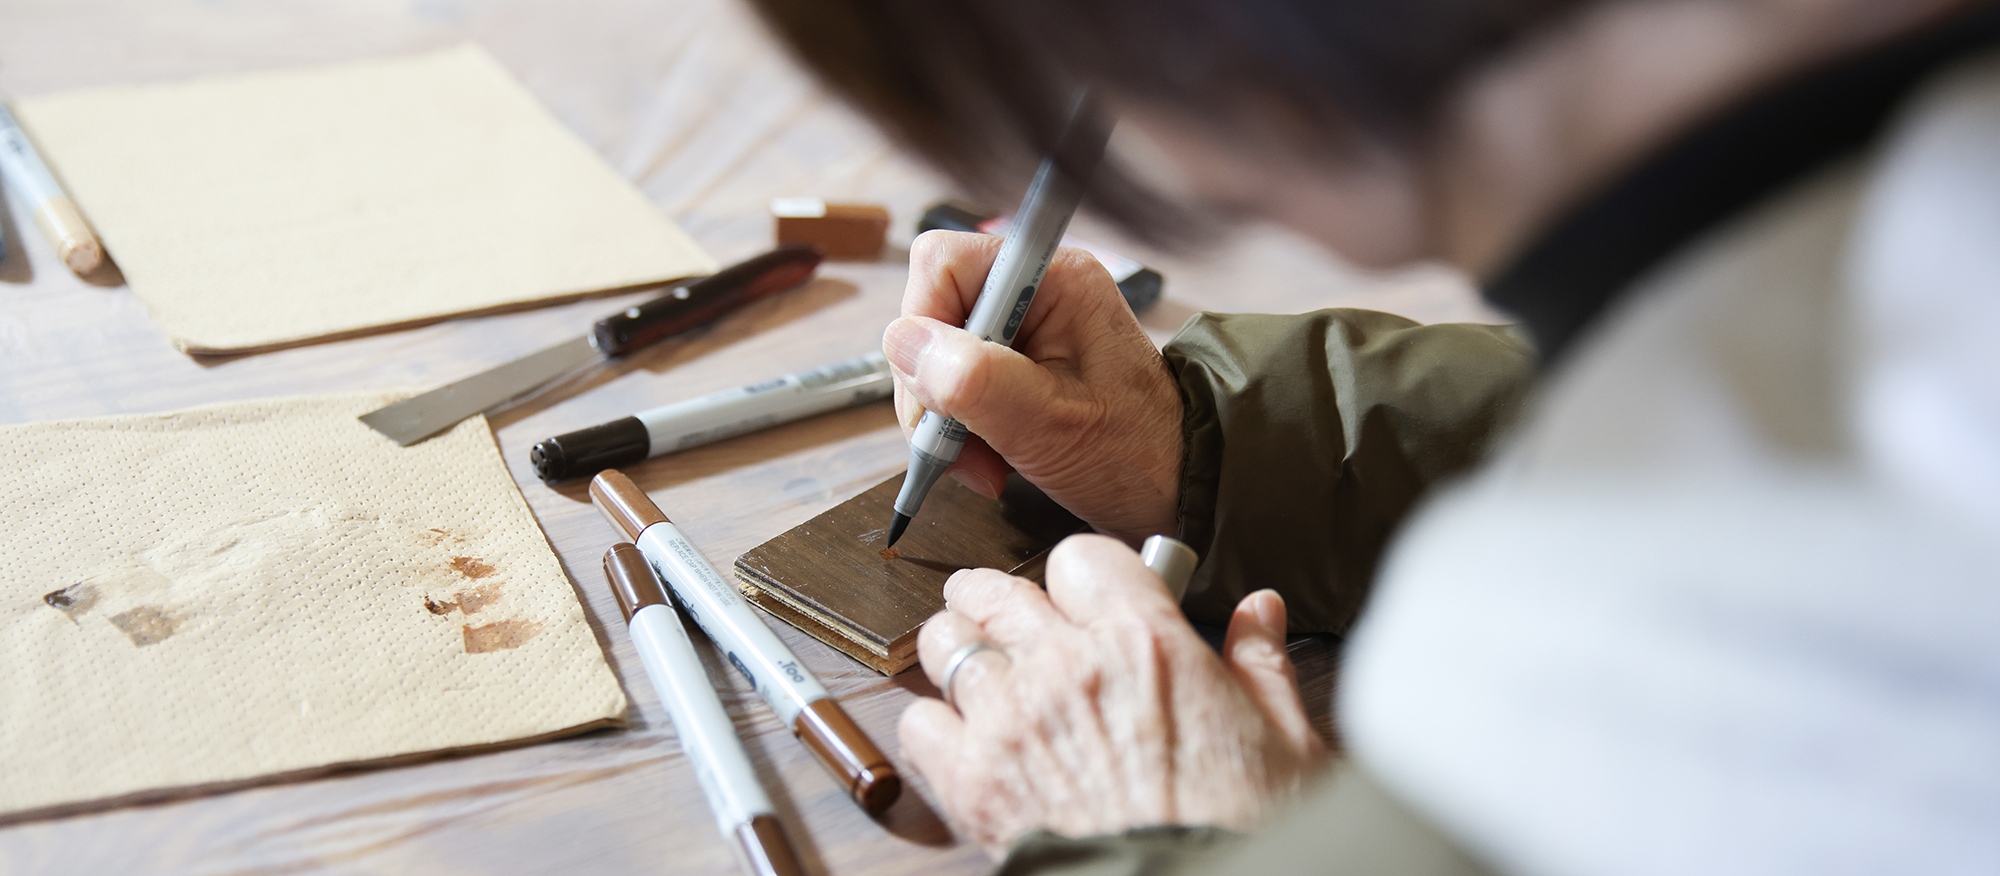 L’esprit unique du « mottainai » au Japon. Découvrez l’artisanat dans un atelier de réparation japonais qui répare toutes sortes de choses. Réparer les souvenirs en réparant les choses.